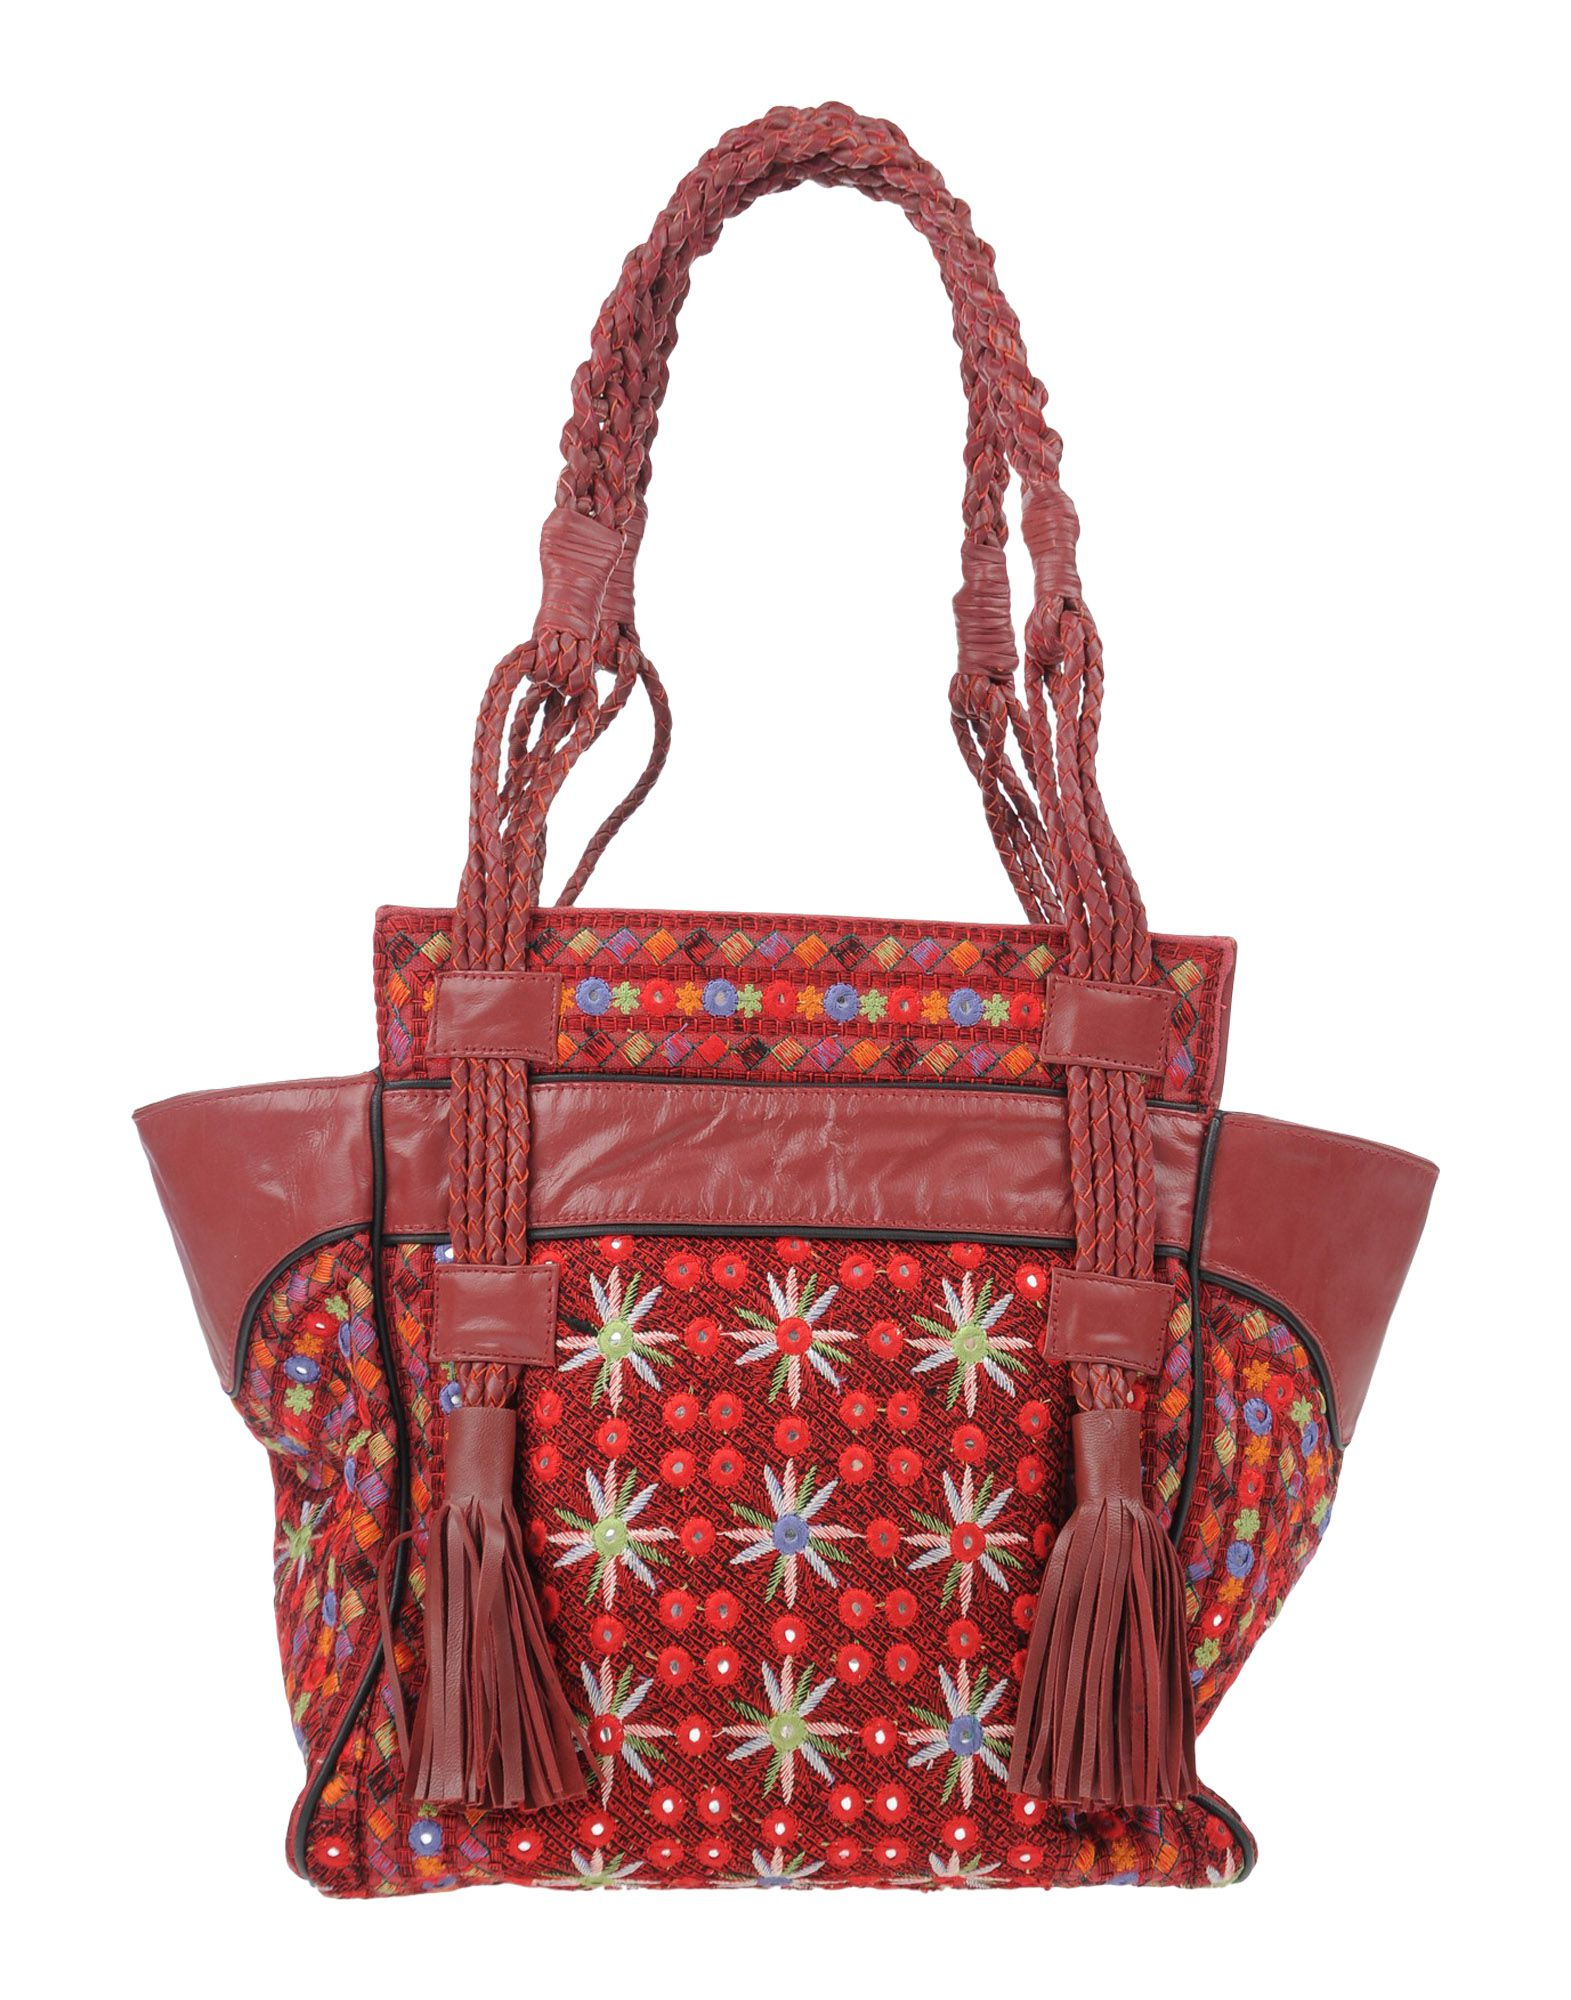 Lyst - Antik Batik Shoulder Bag in Red